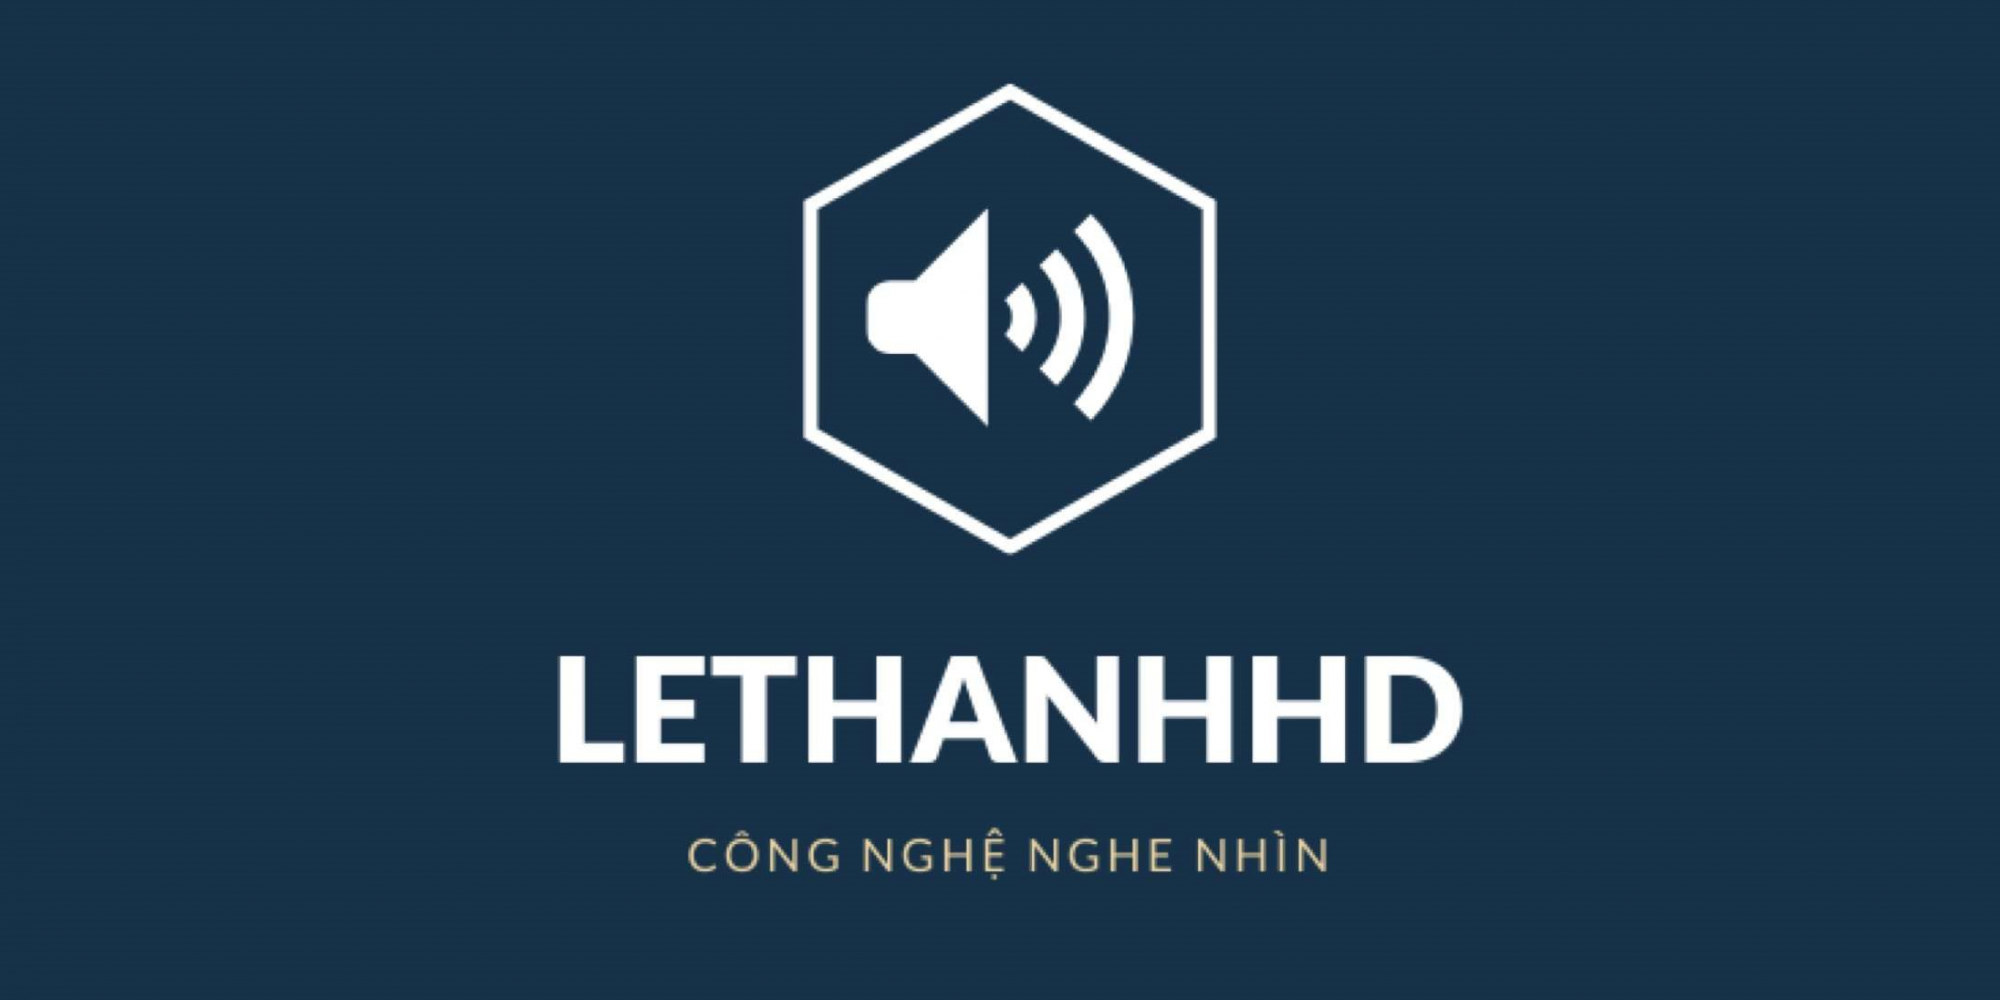 LETHANHHD